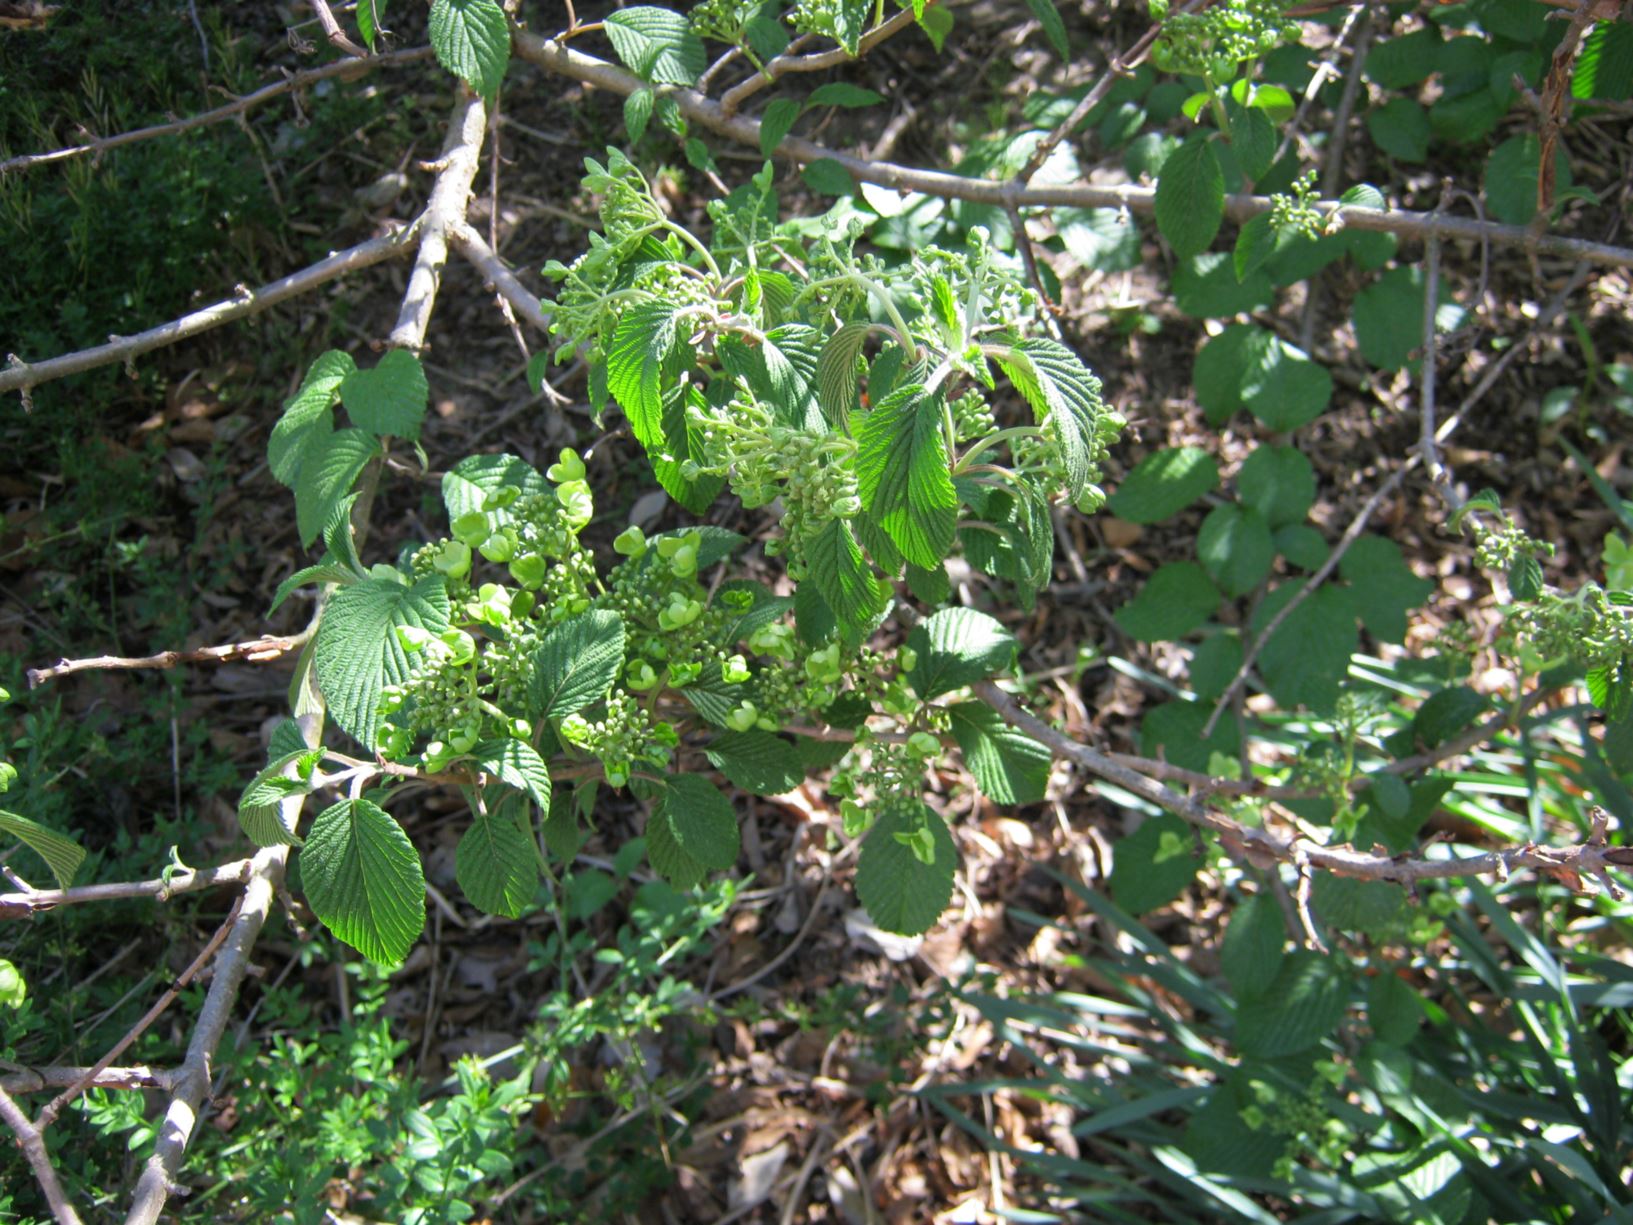 Viburnum plicatum f. tomentosum 'Shoshoni' - doublefile viburnum